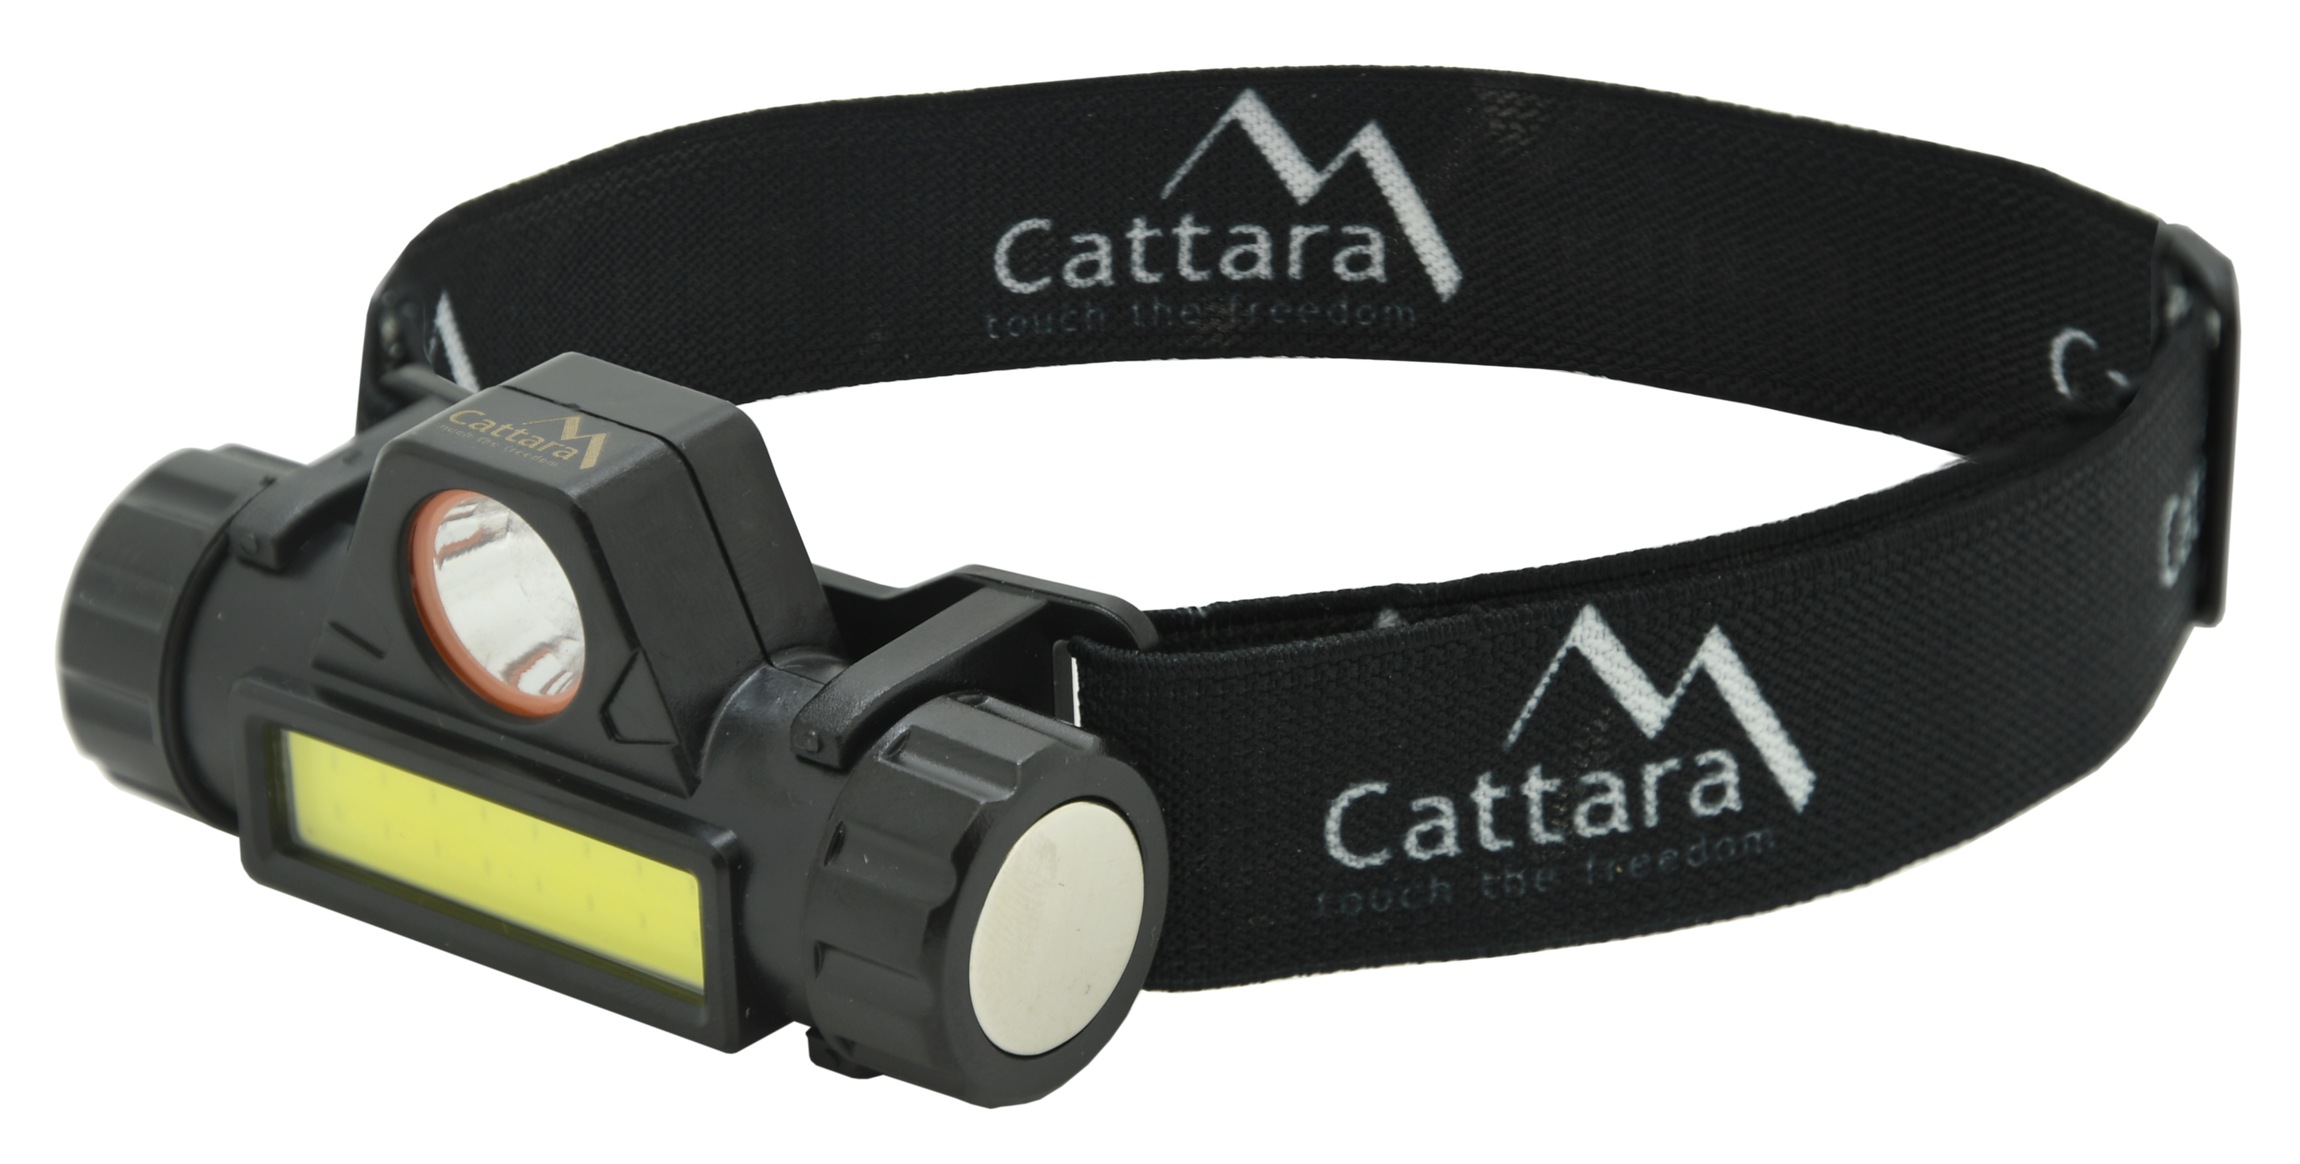 Cattara - Čelovka 120lm nabíjecí